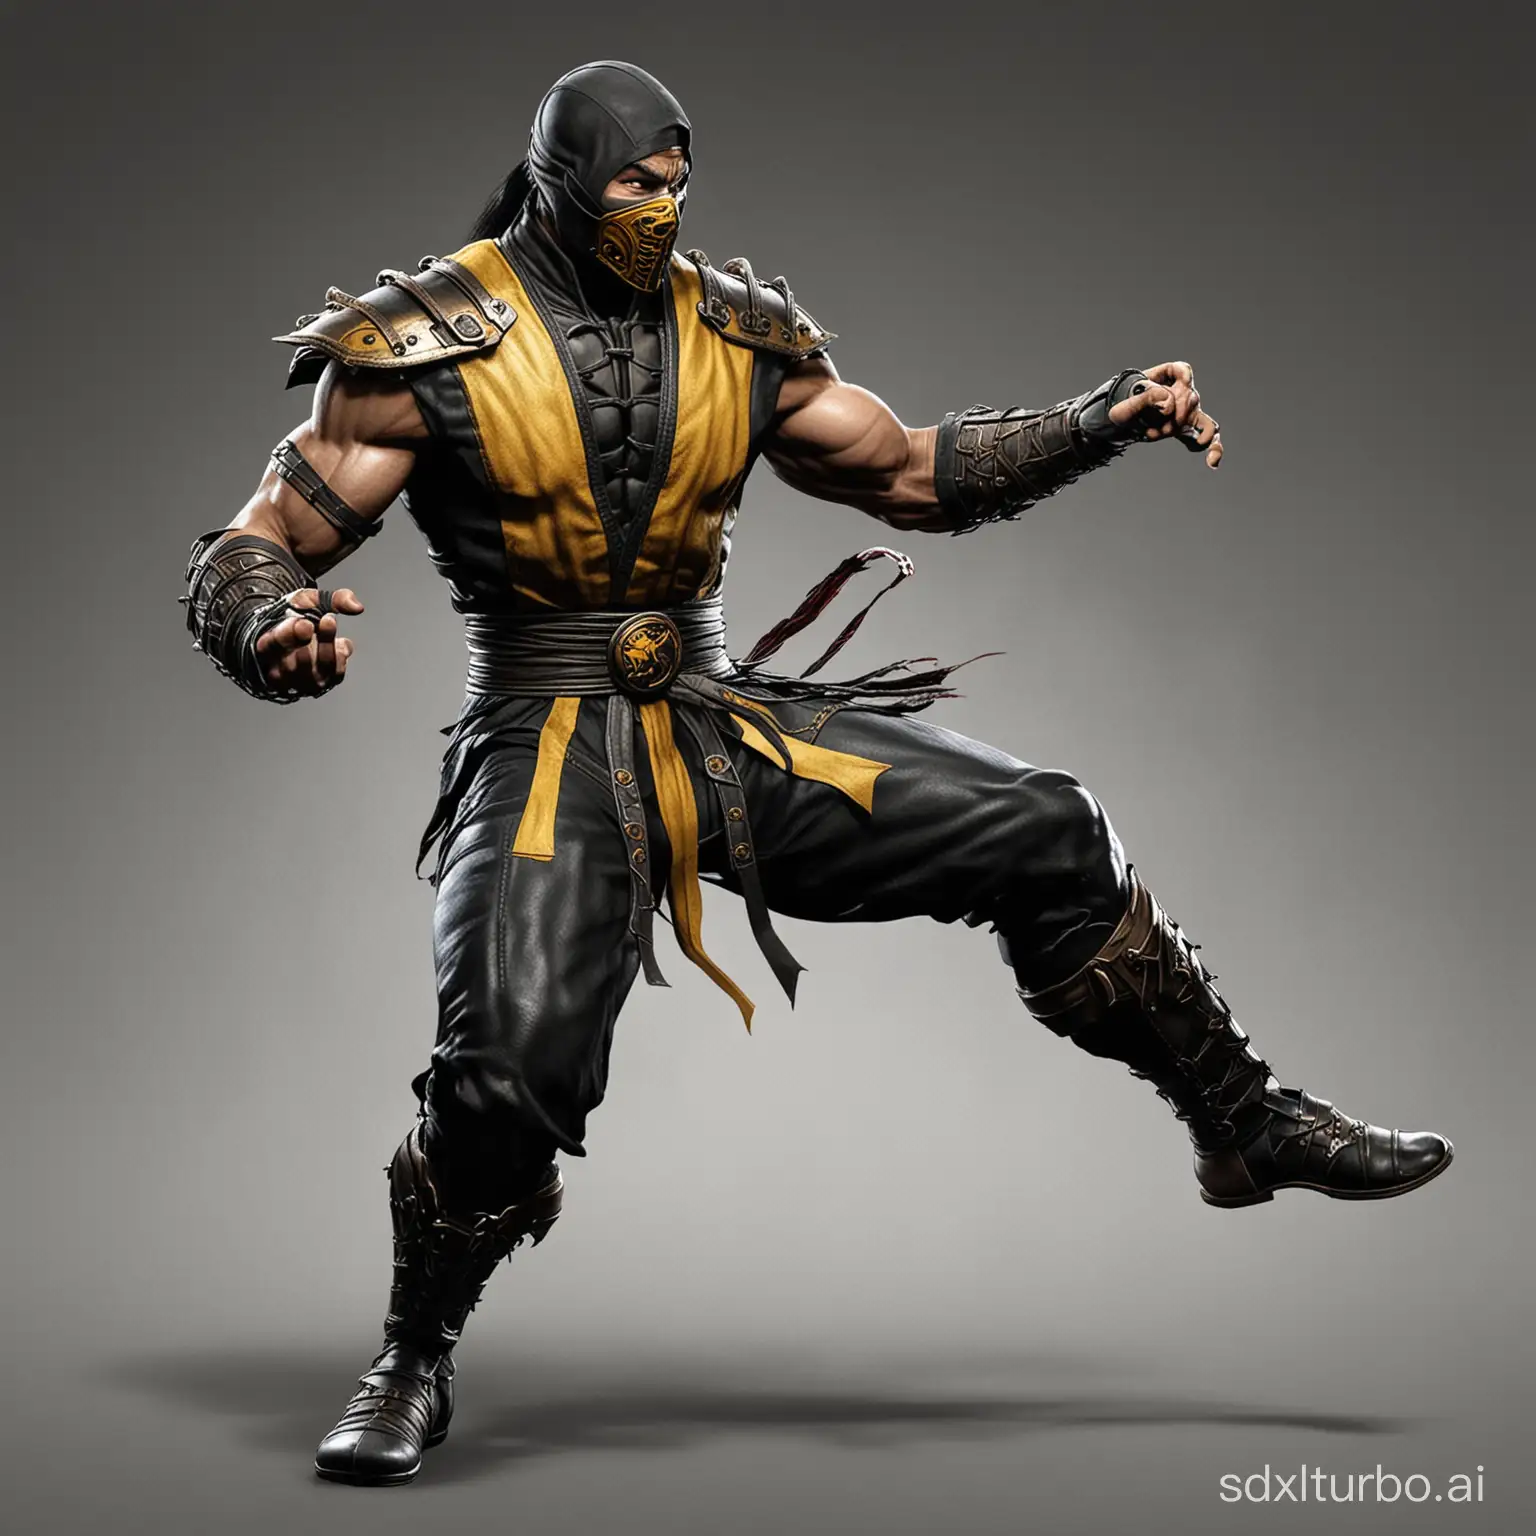 Fierce-Fighter-from-Mortal-Kombat-Series